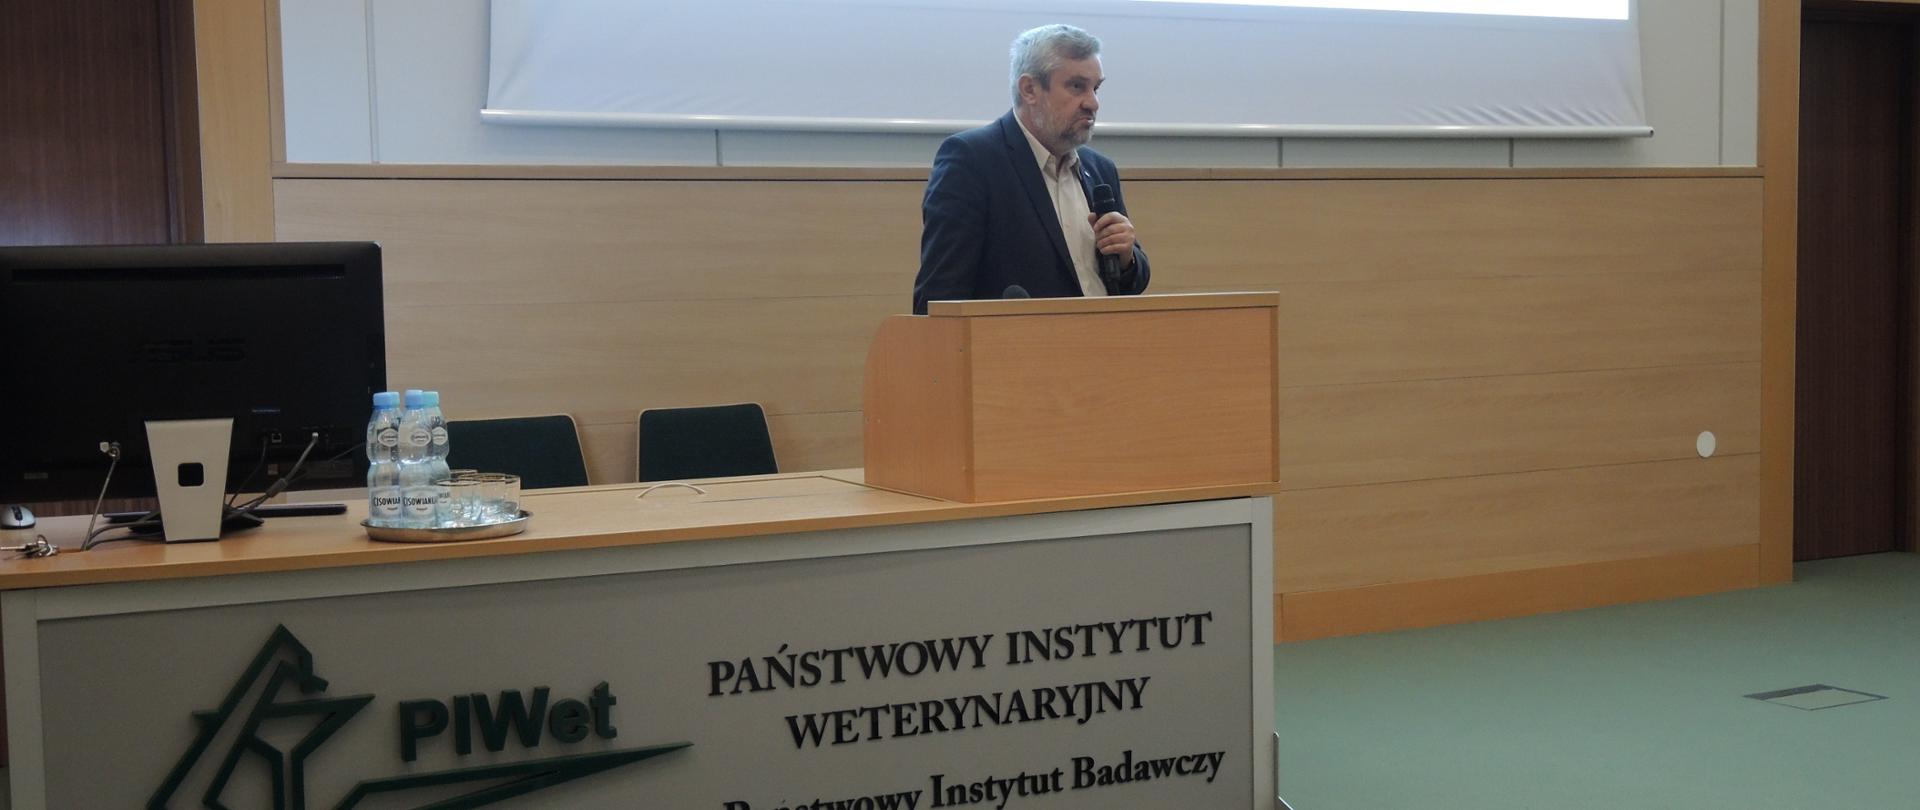 Minister J.K. Ardanowski podczas wystąpienia w PIWet